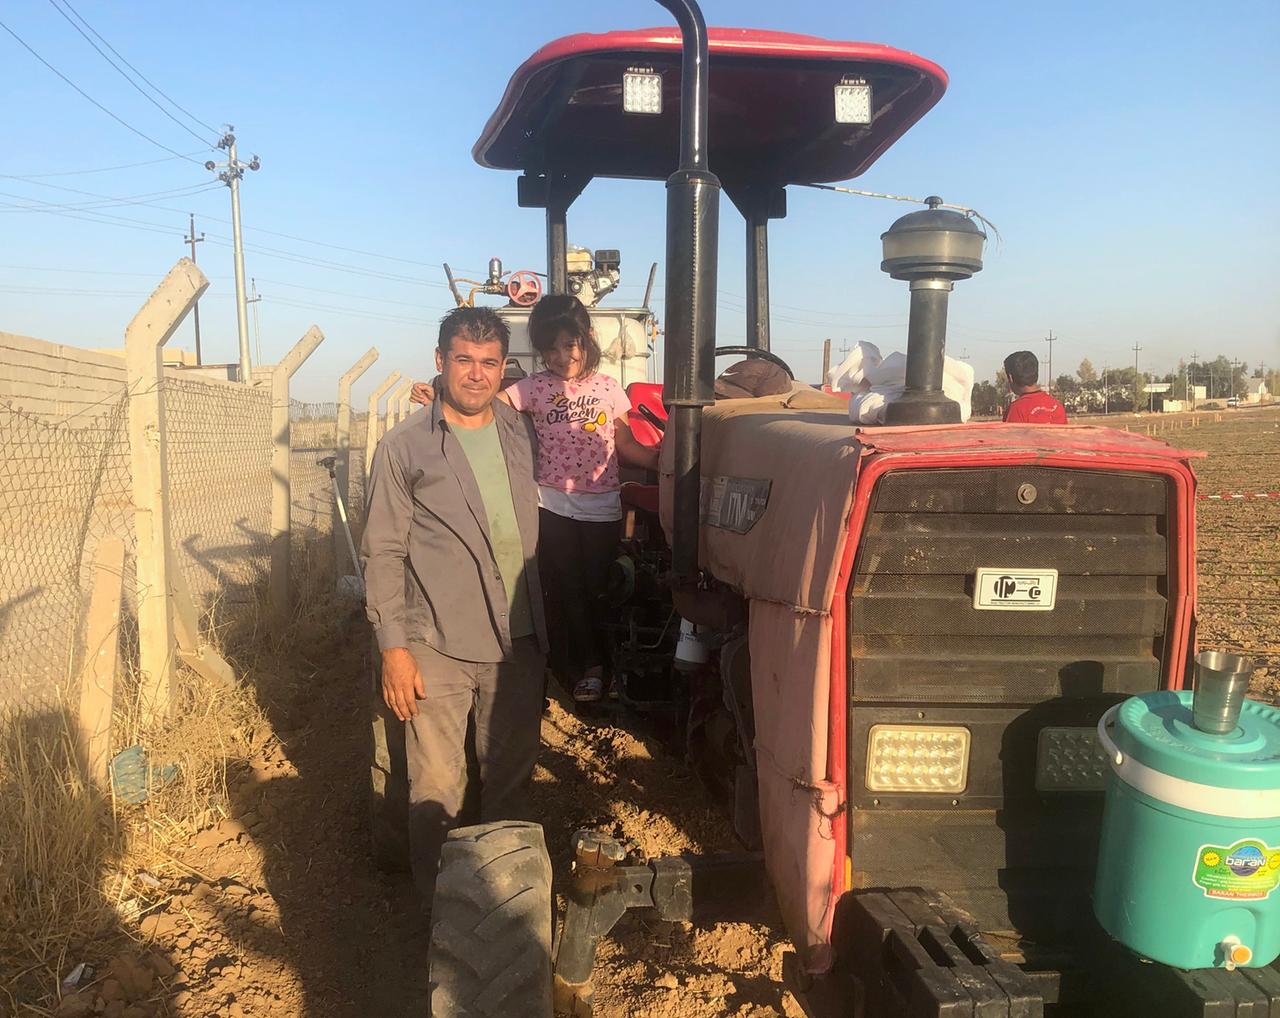 Auf dem staubigen, roten Traktor im Feld steht das Mädchen Lana in pinkem T-Shirt. Neben ihr der Vater und Landwirt in grauer Hose und mit der Sonne im Gesicht.